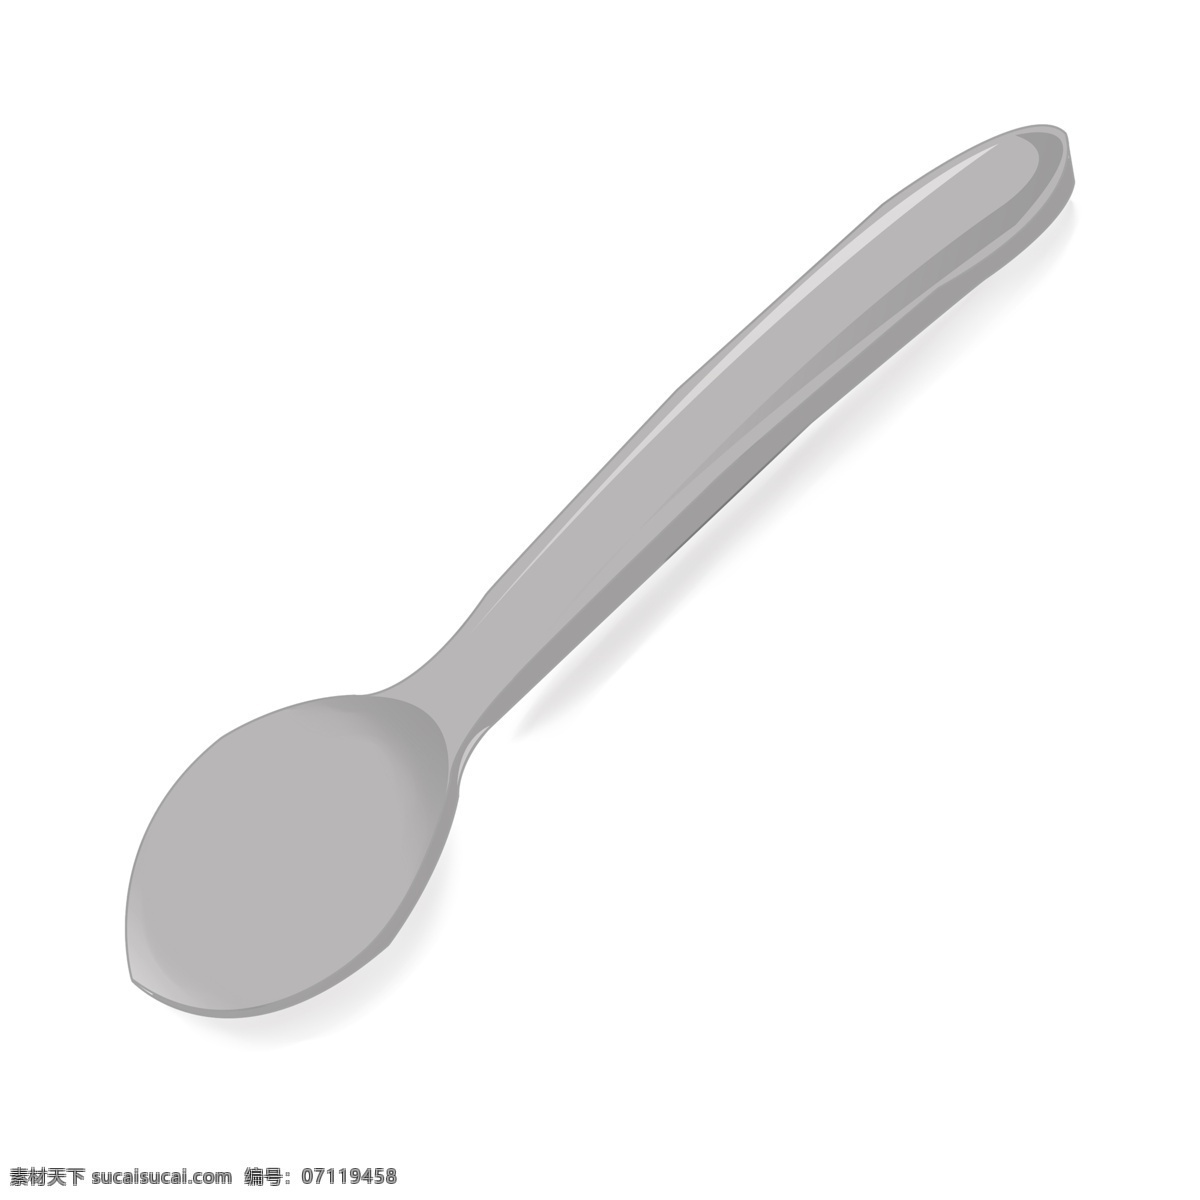 仿真 不锈钢 尖 嘴 勺子 图案 仿真勺子 不锈钢勺子 尖嘴勺子 厨房餐具 餐具勺子 勺子装饰